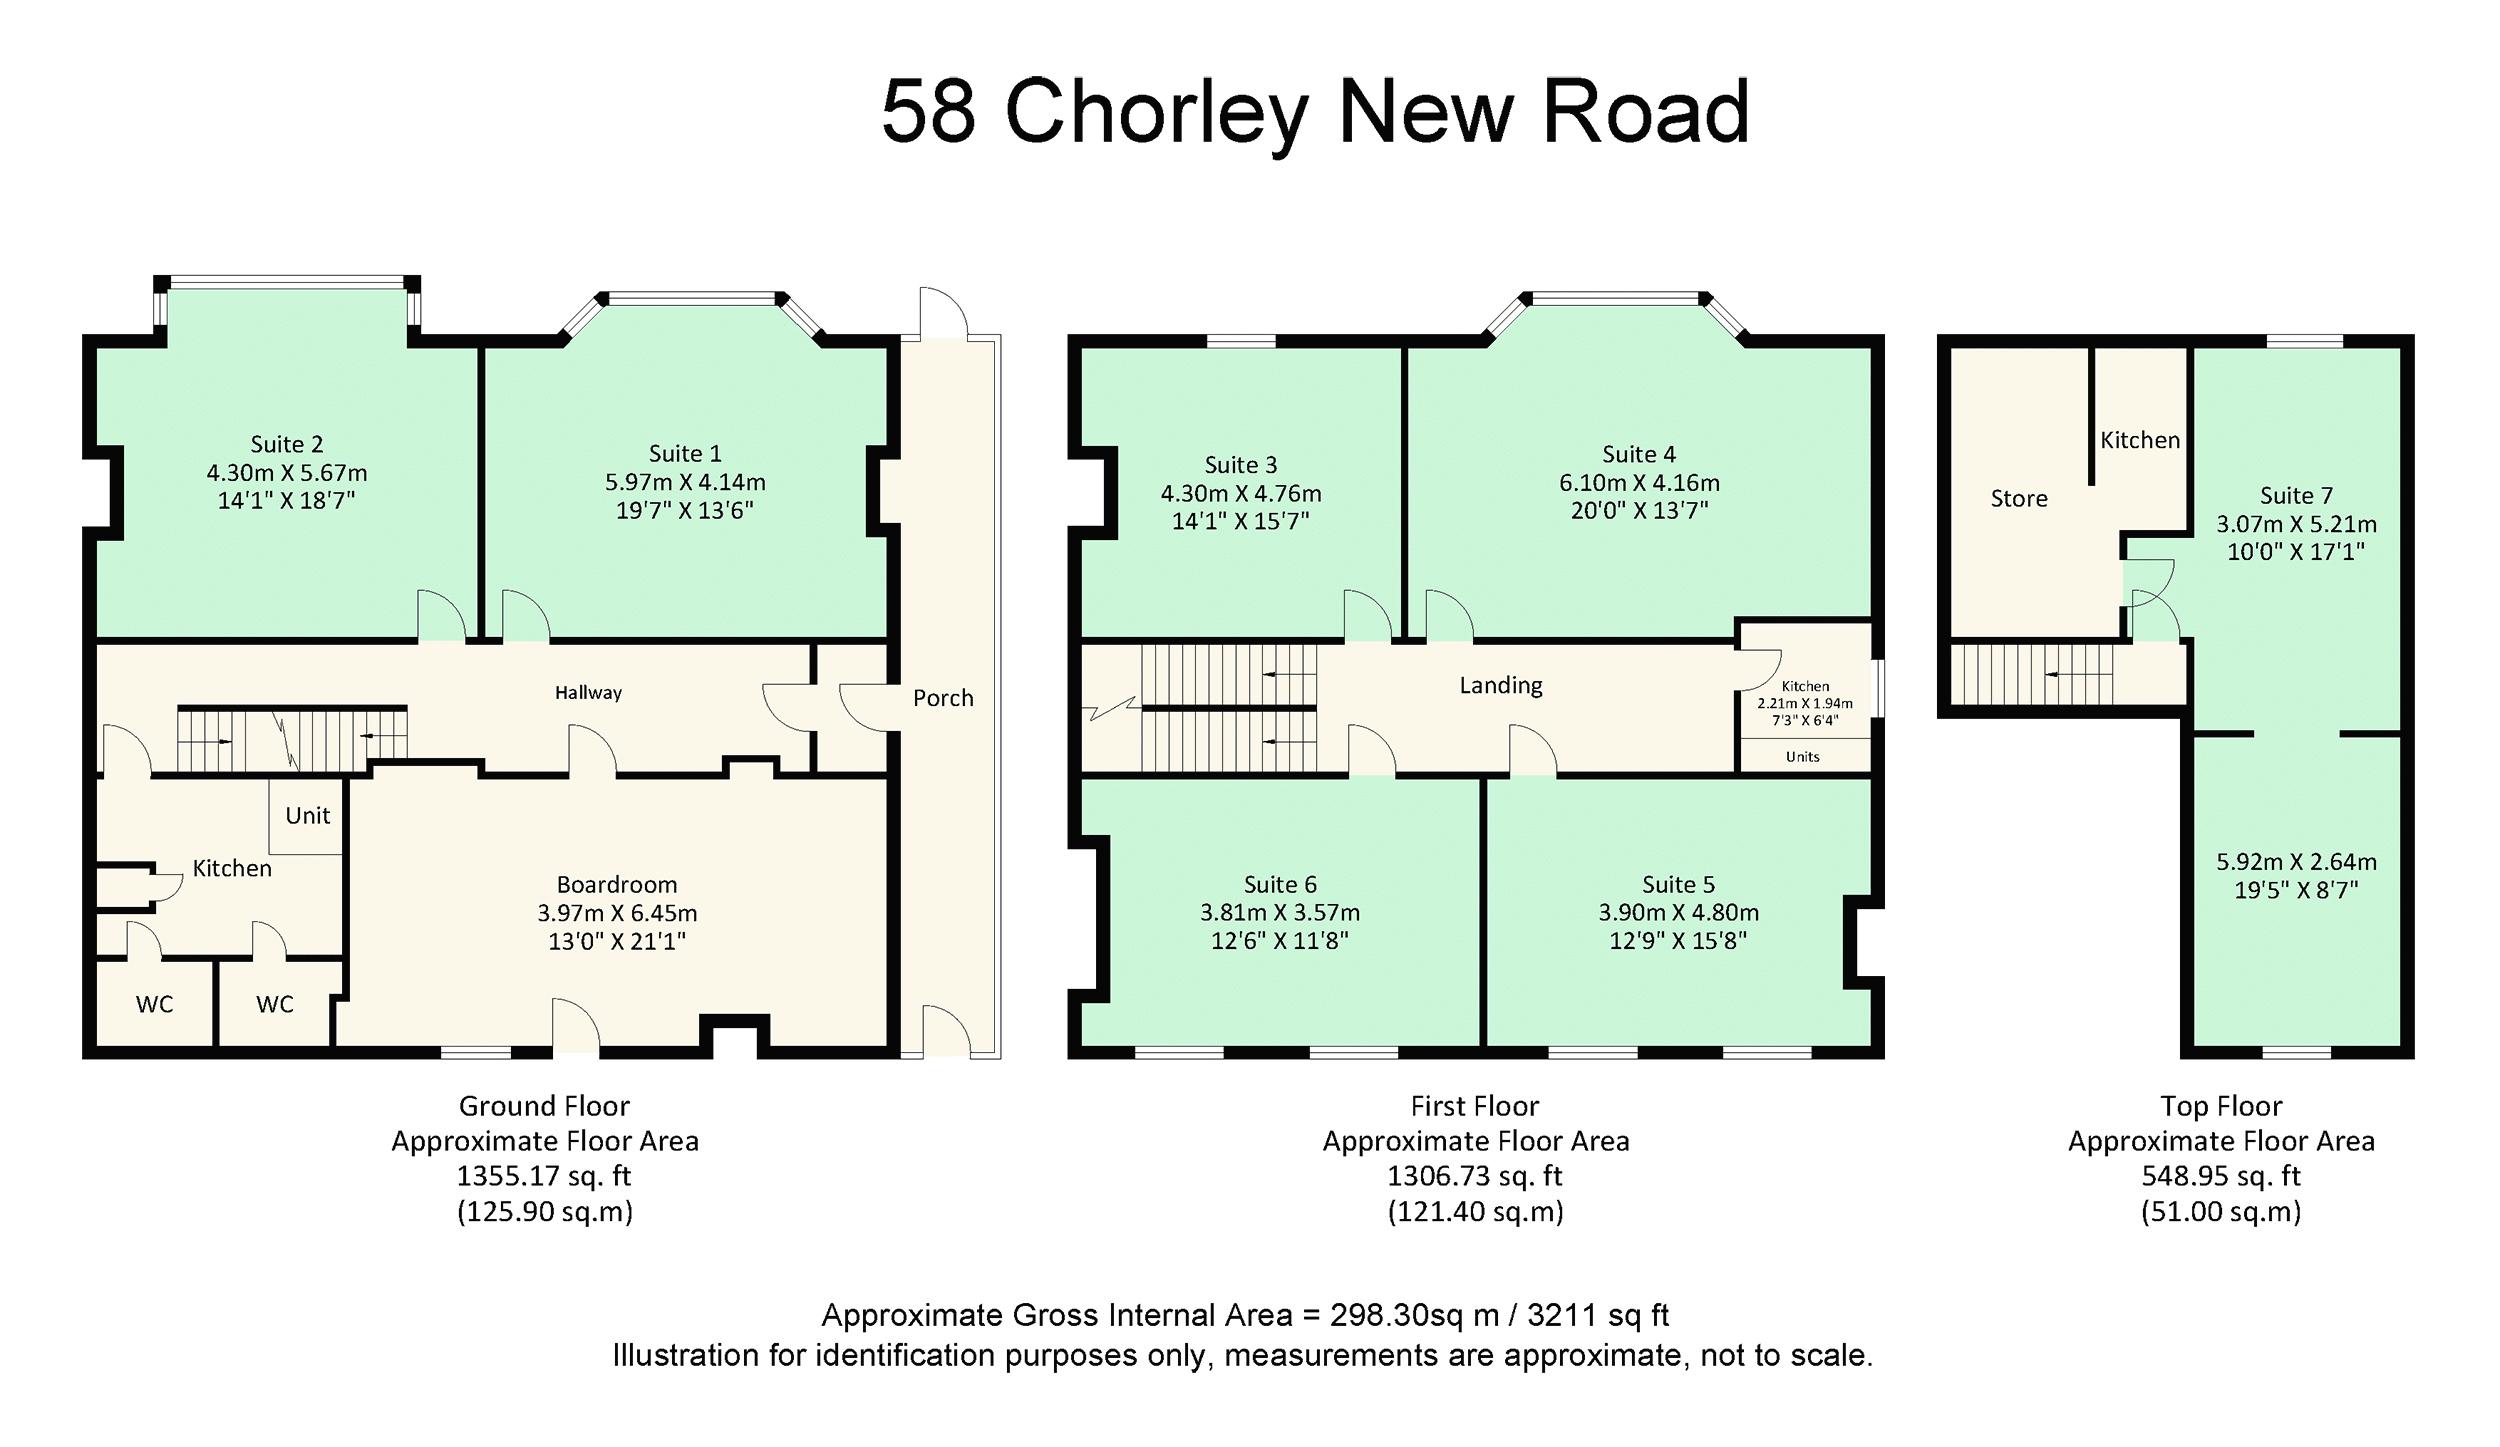 58 Chorley New Road